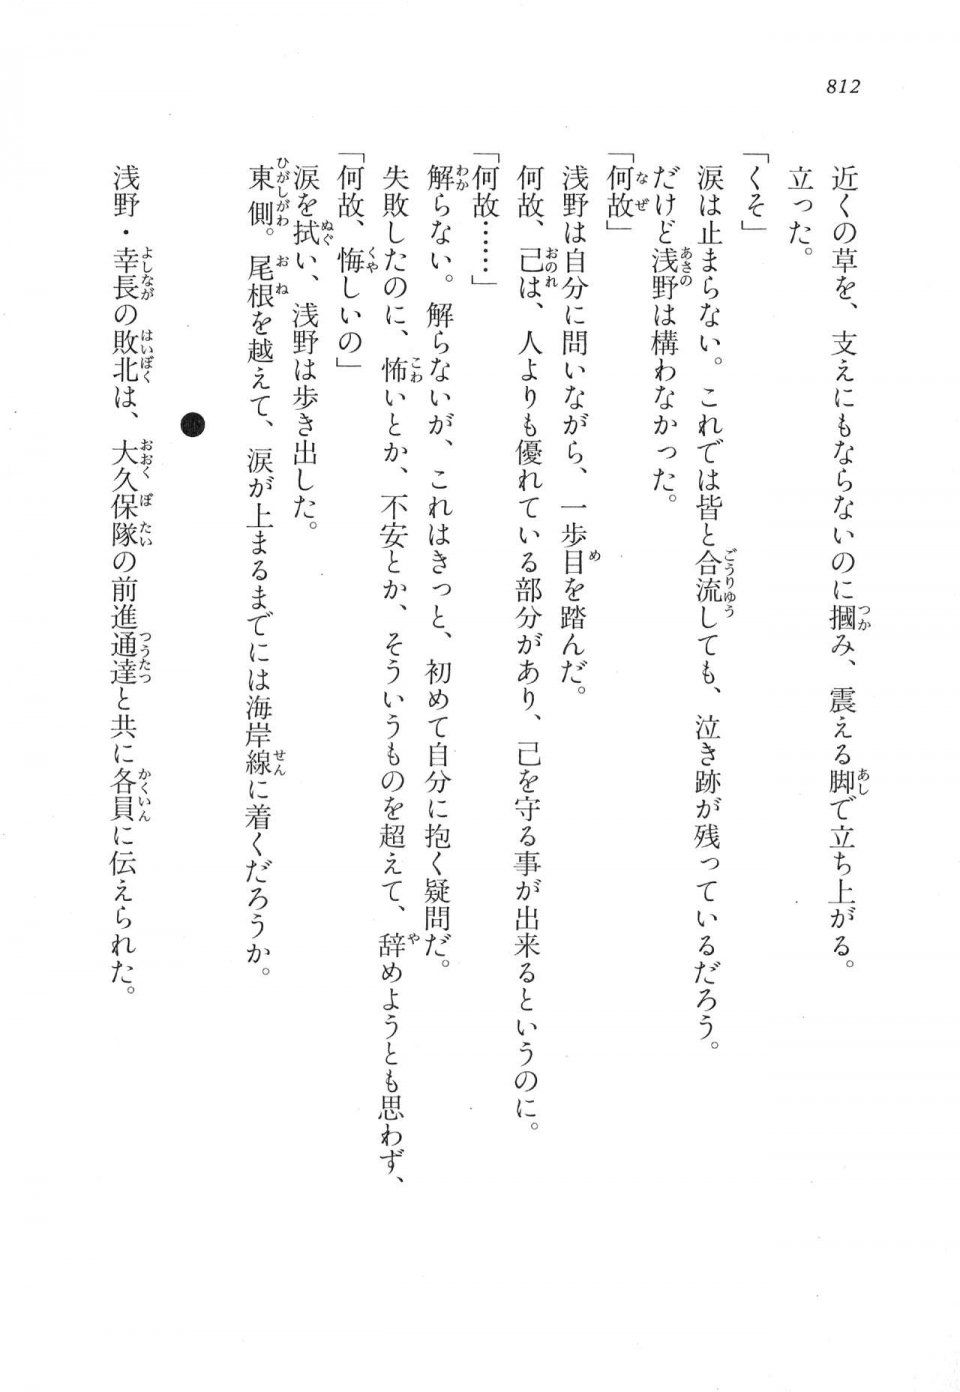 Kyoukai Senjou no Horizon LN Vol 17(7B) - Photo #814